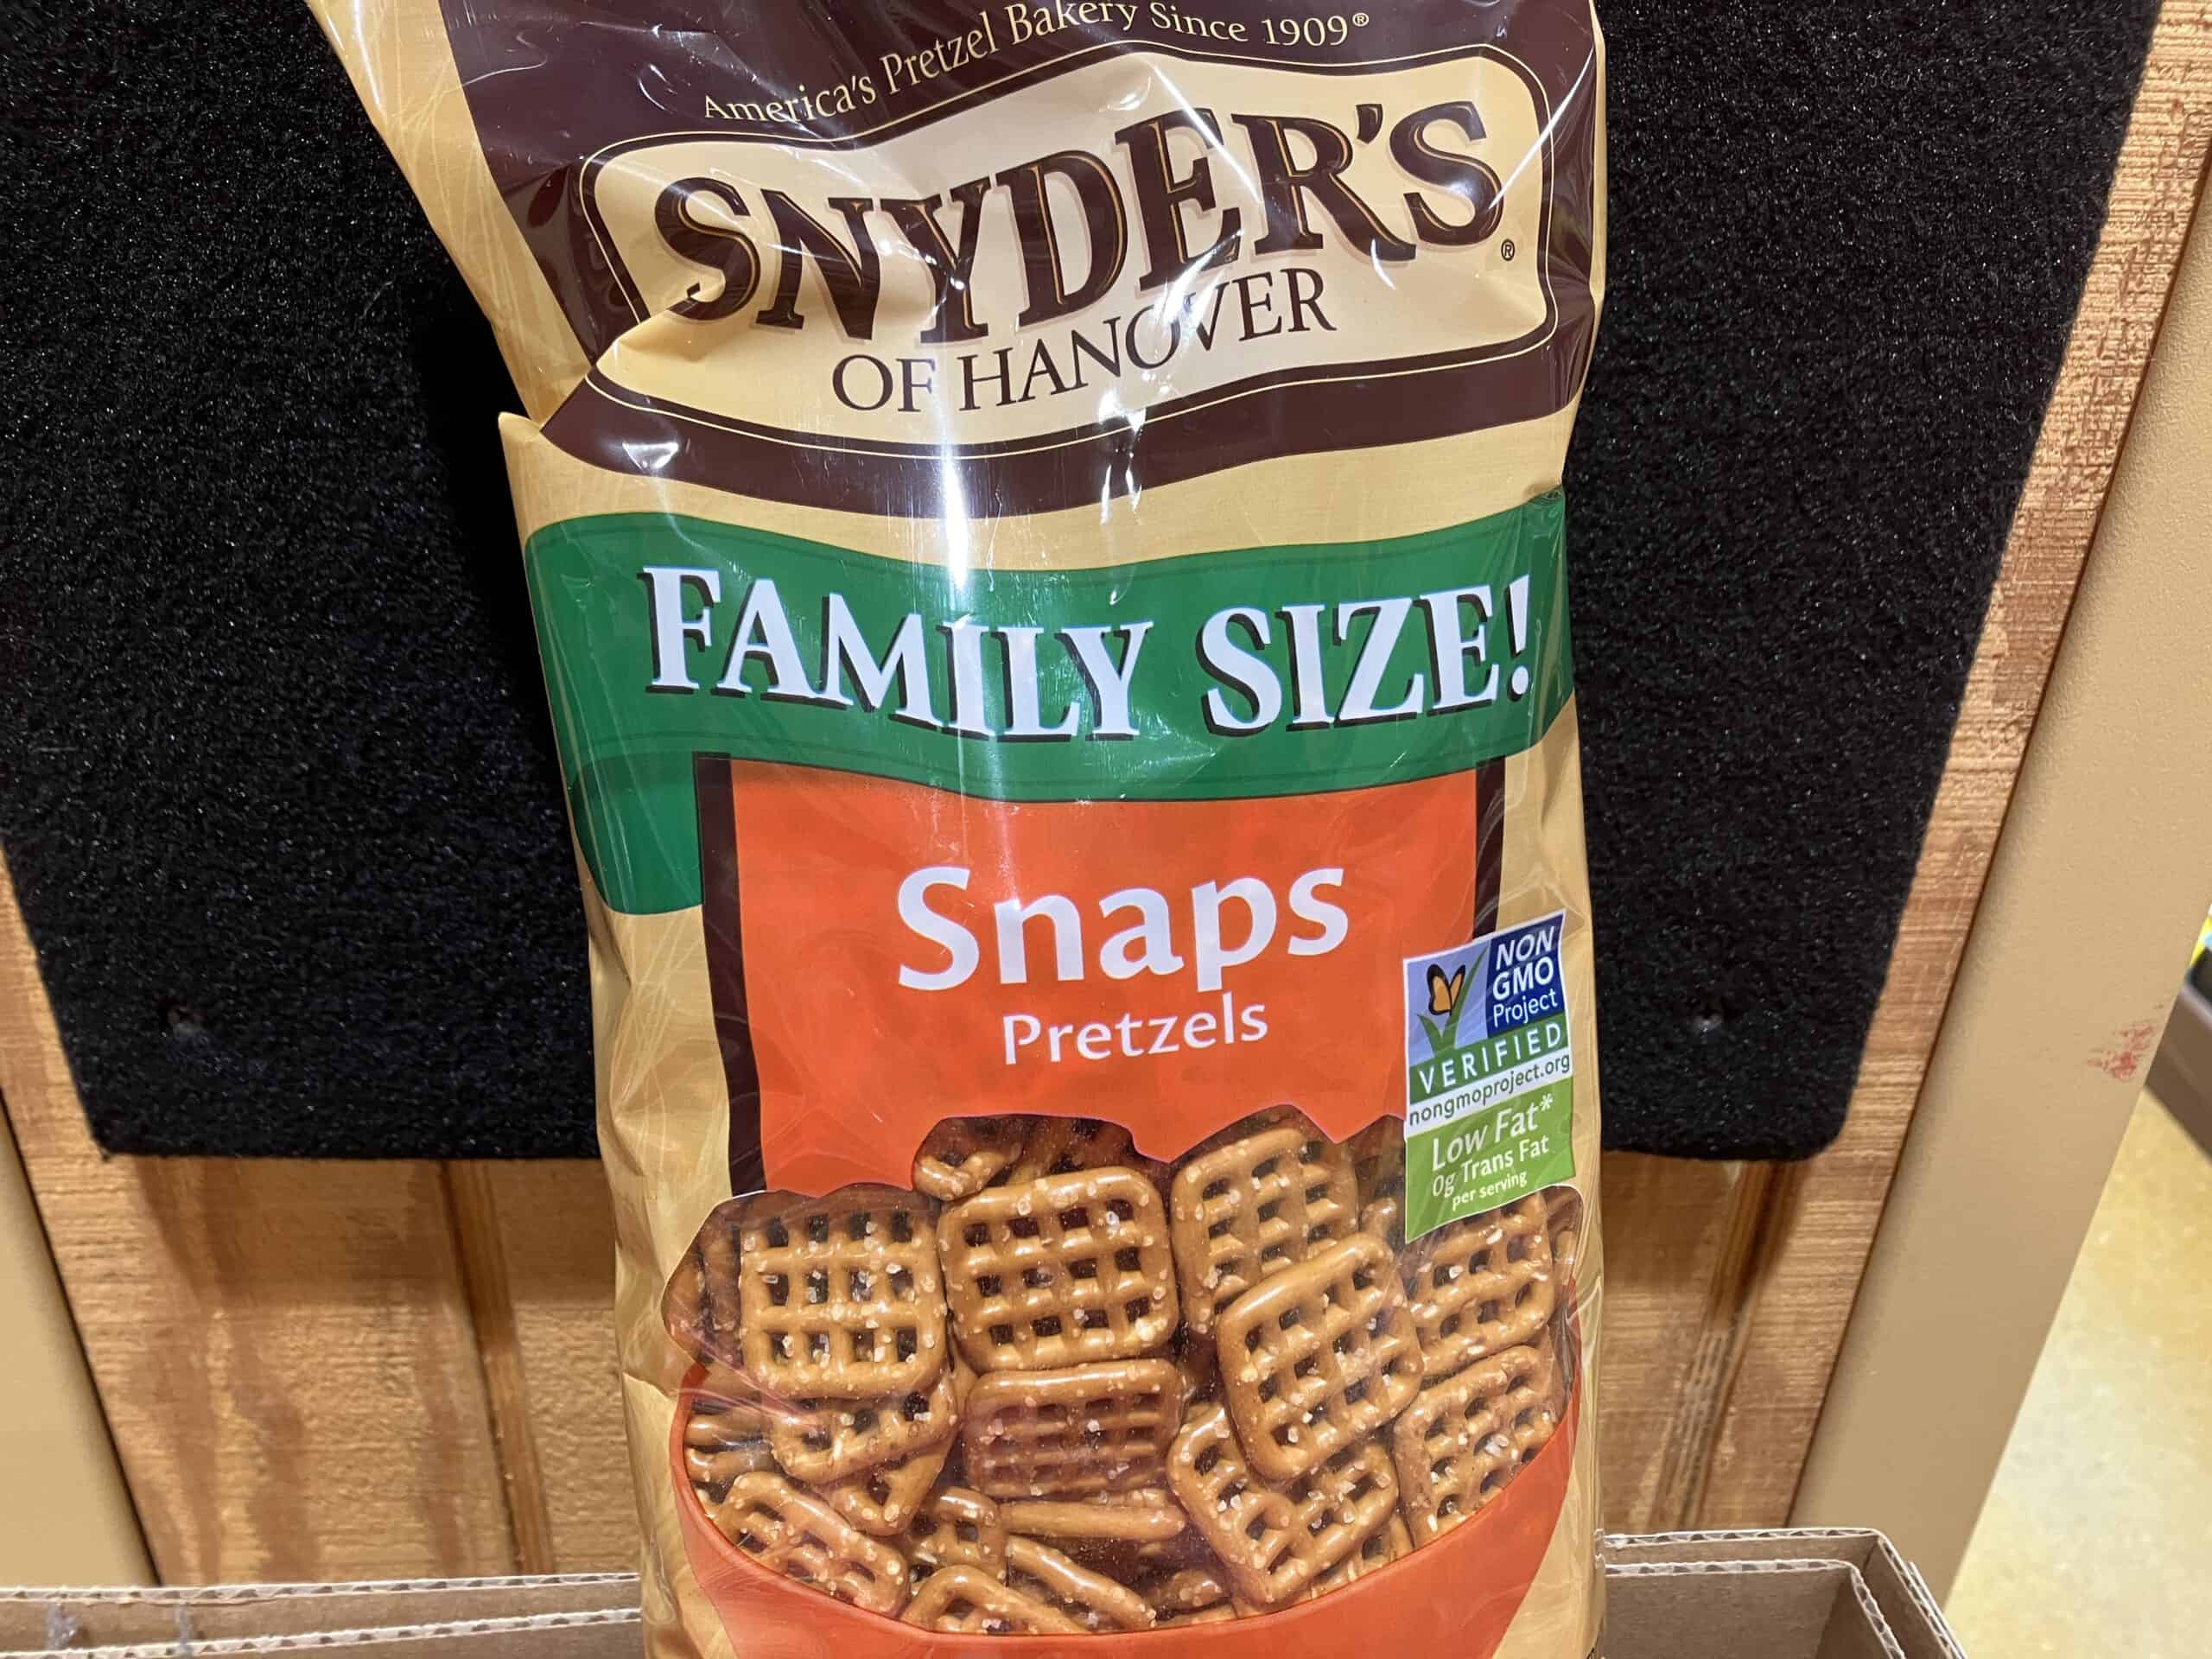 Snyder's of Hanover Snaps pretzels